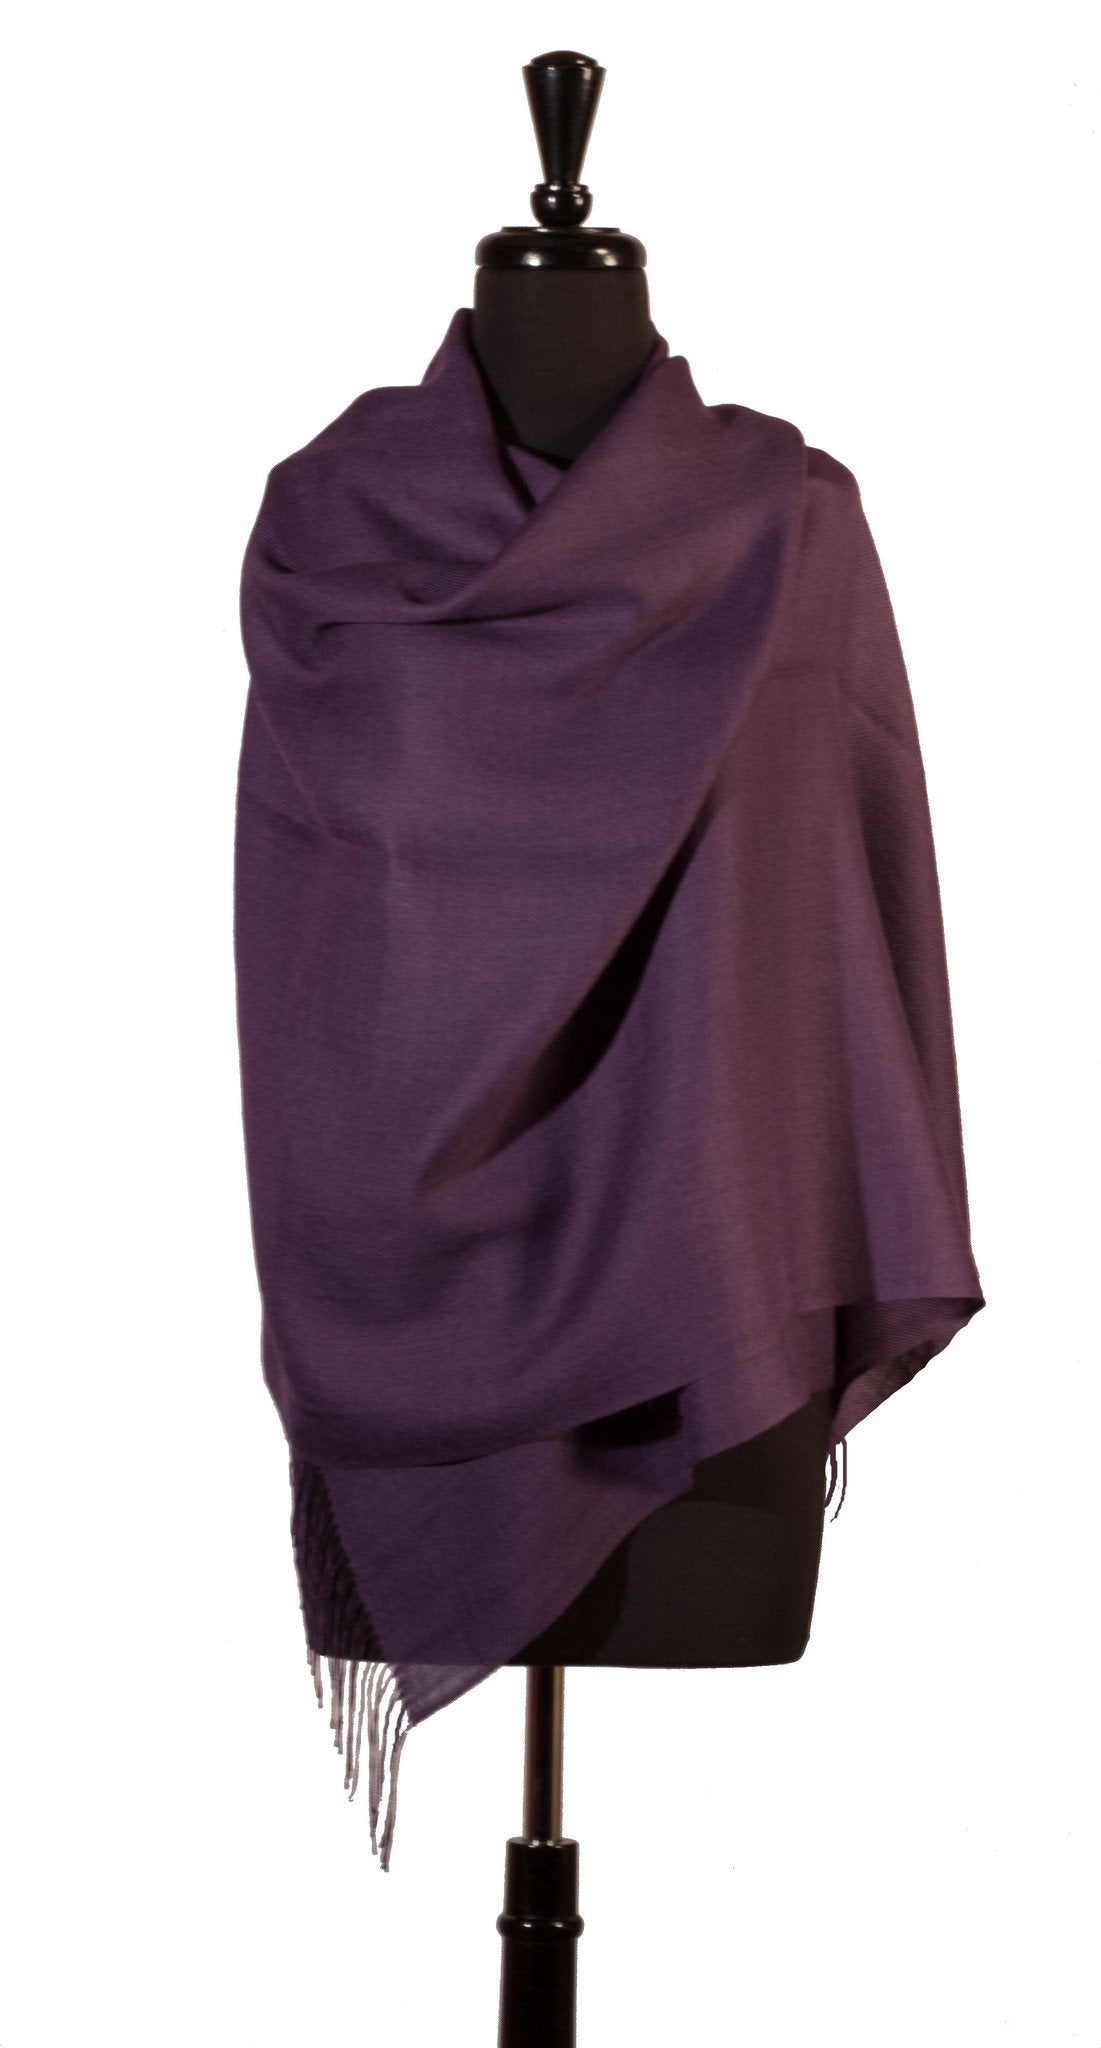 Baby Alpaca &amp; Silk Shawl in Solid Color - Dark Purple - Qinti - The Peruvian Shop